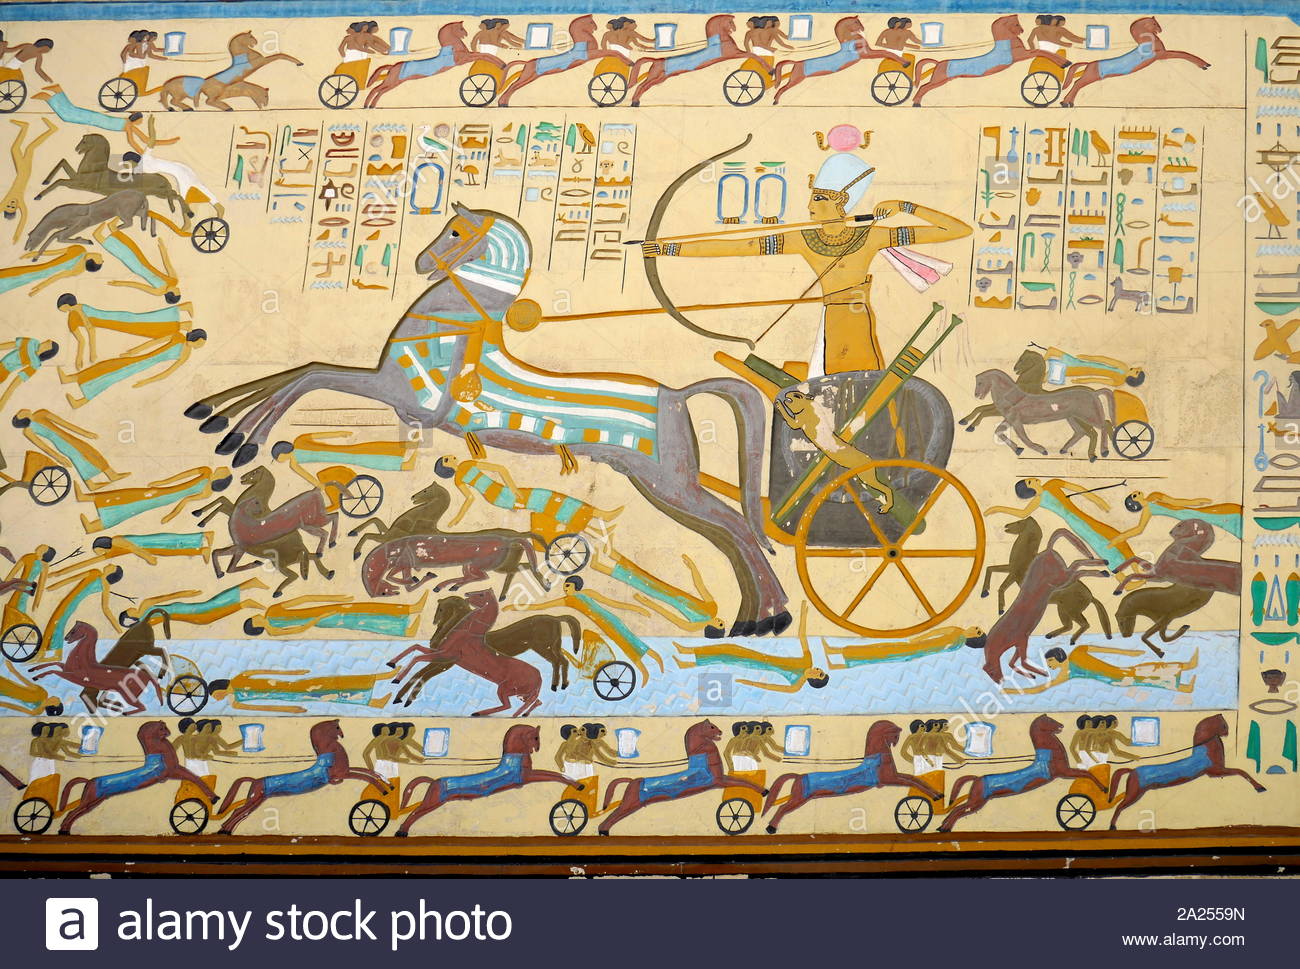 Rekonstruktion eines gemalten Fresko eine Kampfszene im alten Ägypten. Ein Pharao besiegt seine Feinde in einem massiven Ansturm Wagen geführt. Die Schlacht von Kadesch oder Schlacht von Qadesh fand zwischen den Kräften des ägyptischen Reiches unter Ramses II. und dem Hethiterreich unter Muwatalli II an der Stadt von kades am Orontes, gerade vor der See in der Nähe von Homs die moderne Syrisch-Grenze. Die Schlacht ist in der Regel bis 1274 v. Chr. in den konventionellen ägyptische Chronologie datiert, und ist der Kampf in der aufgezeichneten Geschichte, für die Details der Taktik und Formationen bekannt sind. Es ist b Stockfoto